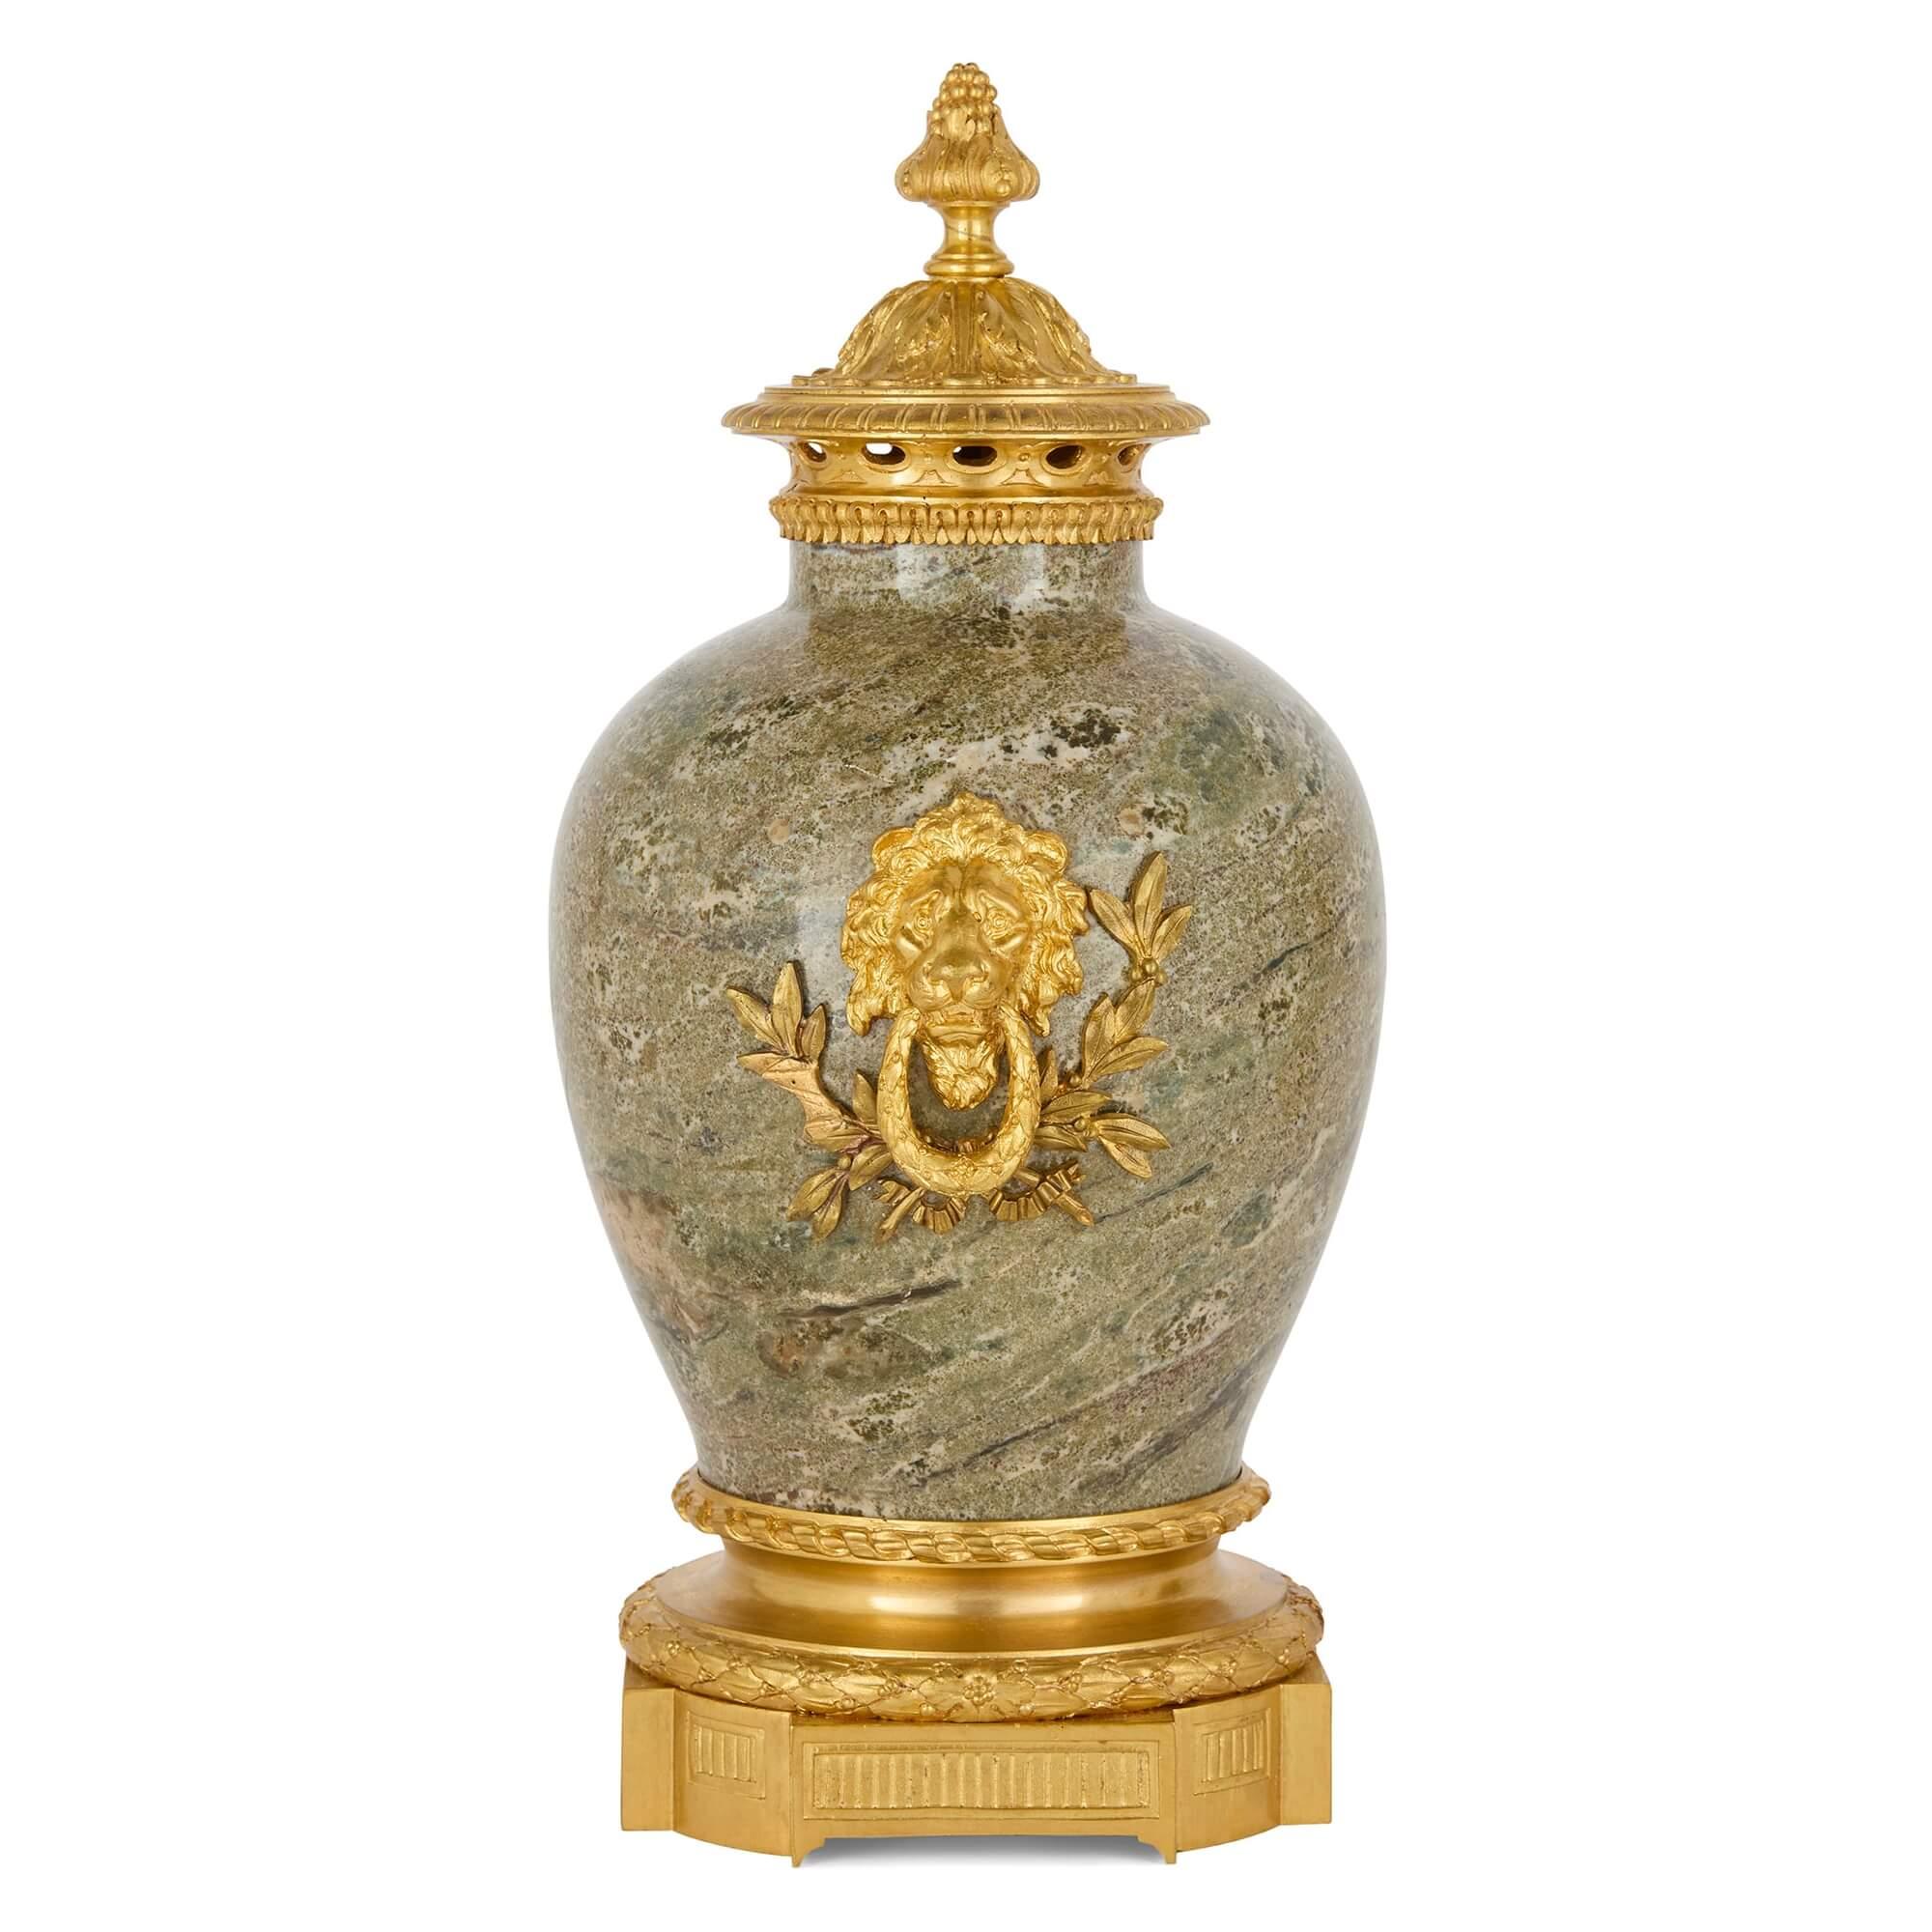 Paar Vasen aus Marmor und Ormolu im Empire-Stil von Raingo 
Französisch, Ende 19. Jahrhundert 
Höhe 37cm, Breite 22cm, Tiefe 18cm

Dieses prächtige Vasenpaar ist eine Kombination aus grauem, geädertem Marmor und glänzenden Fassungen aus Goldbronze,